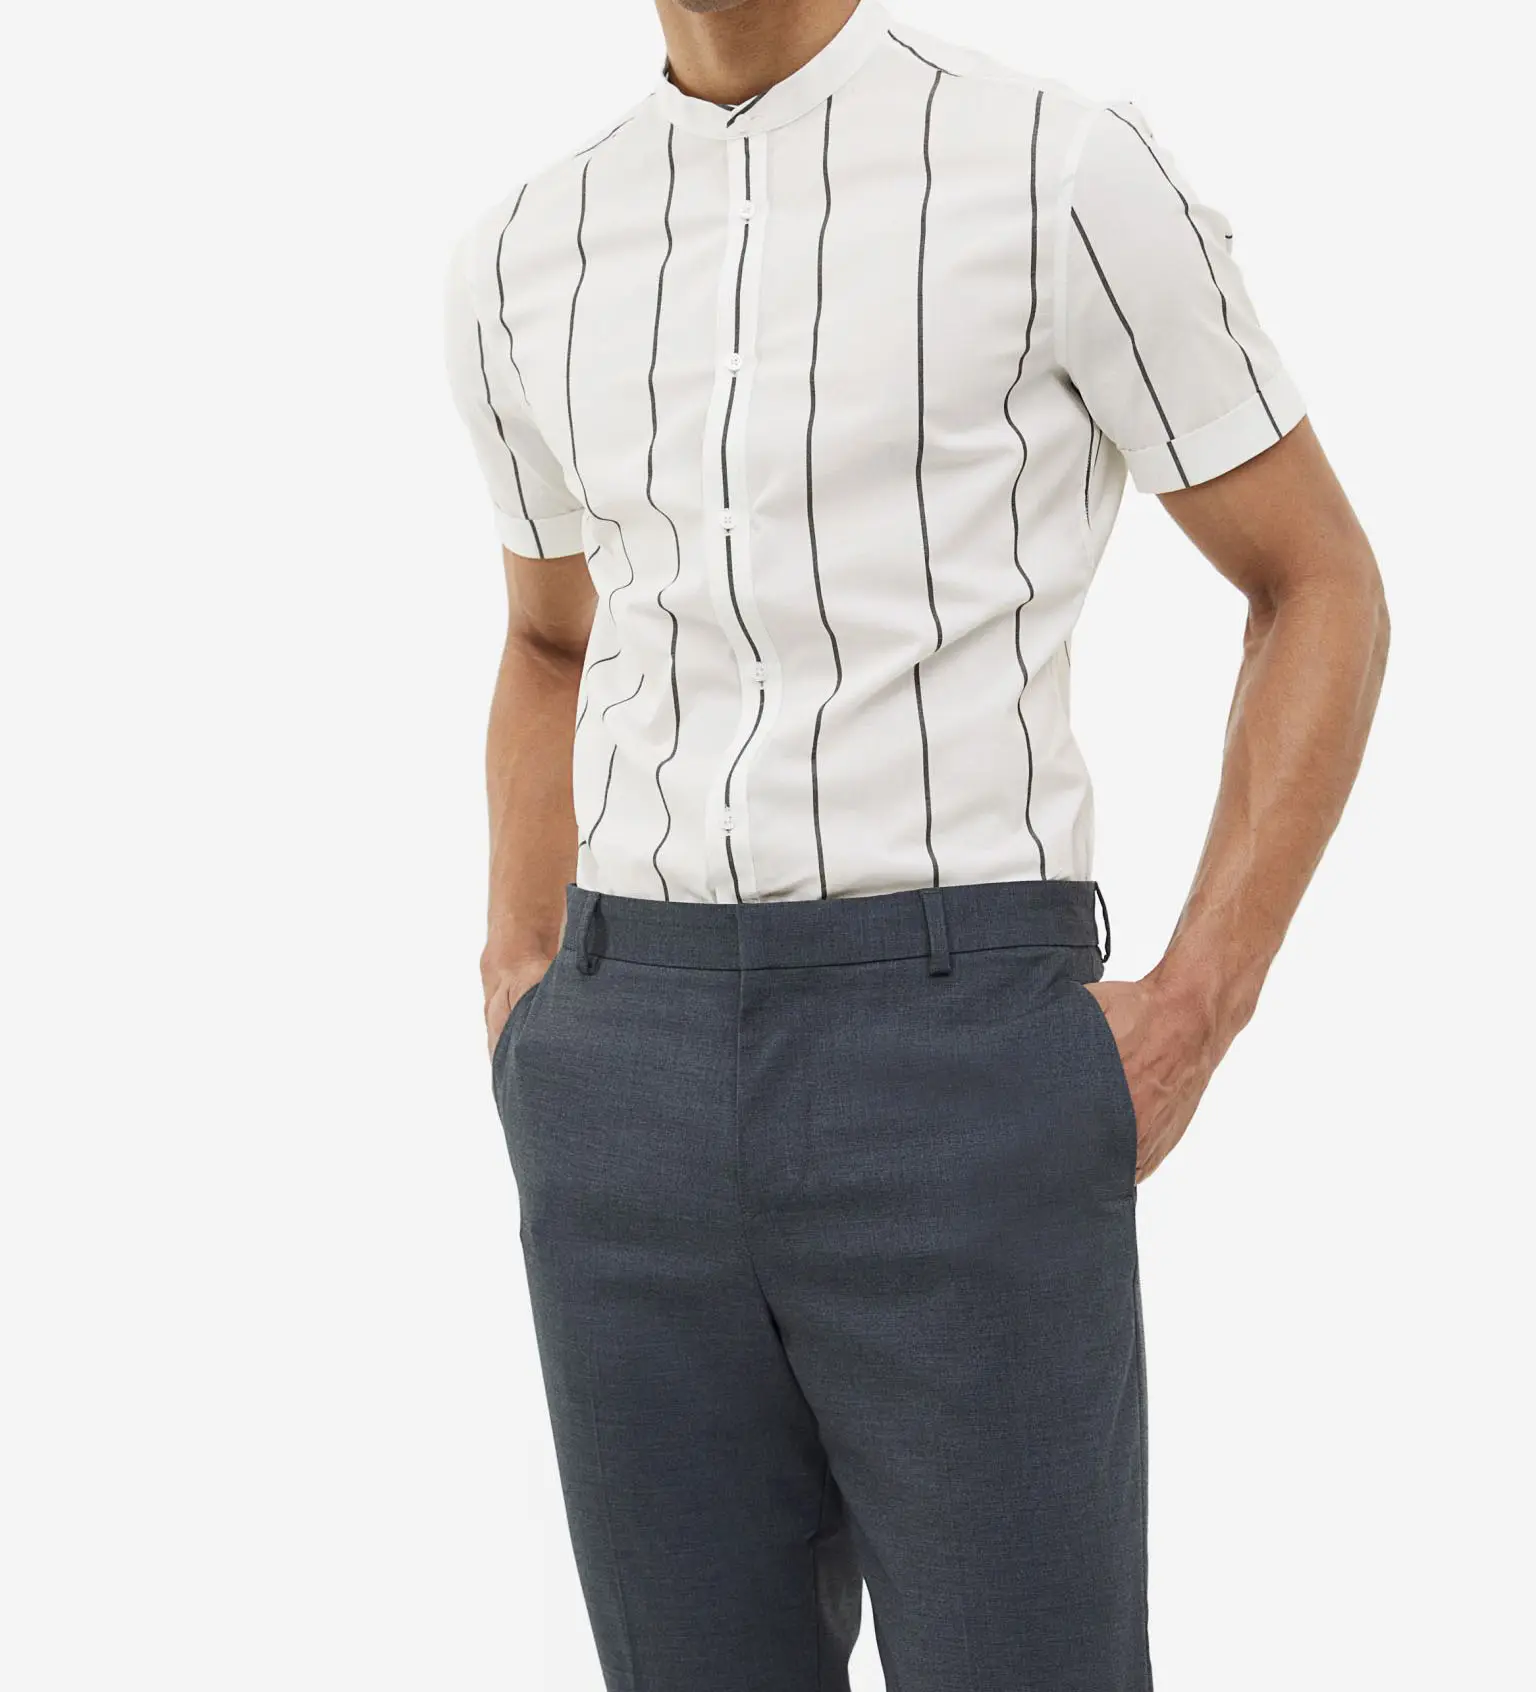 Popular hombres al aire libre cómodo Slim Fit manga corta negocios Casual impreso camisas de vestir formales